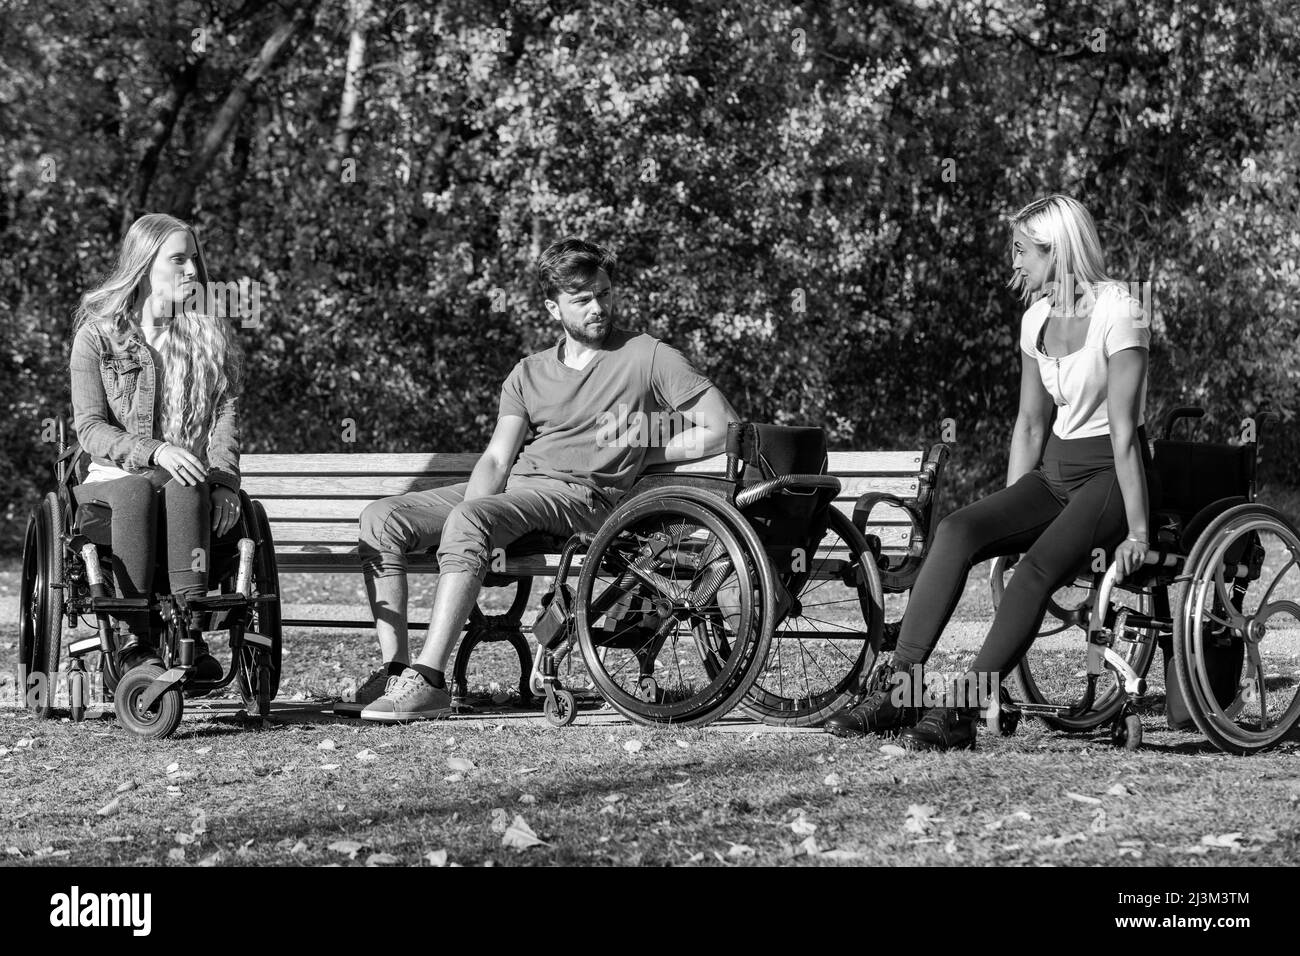 Schwarz-Weiß-Bild einer Gruppe von drei jungen Querschnittsgelähmten in ihren Rollstühlen, die an einem schönen sonnigen Tag gemeinsam in einem Park zu Besuch sind Stockfoto